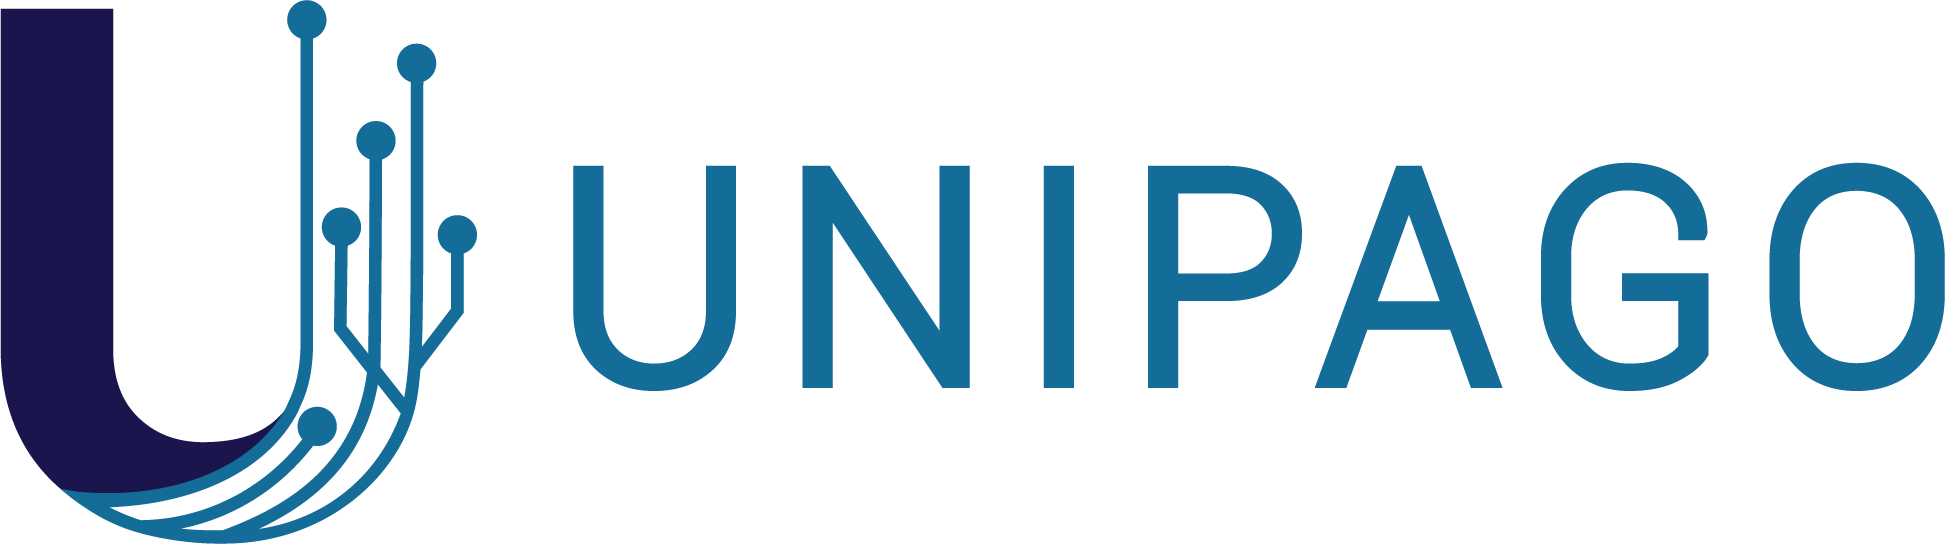 unipago logo